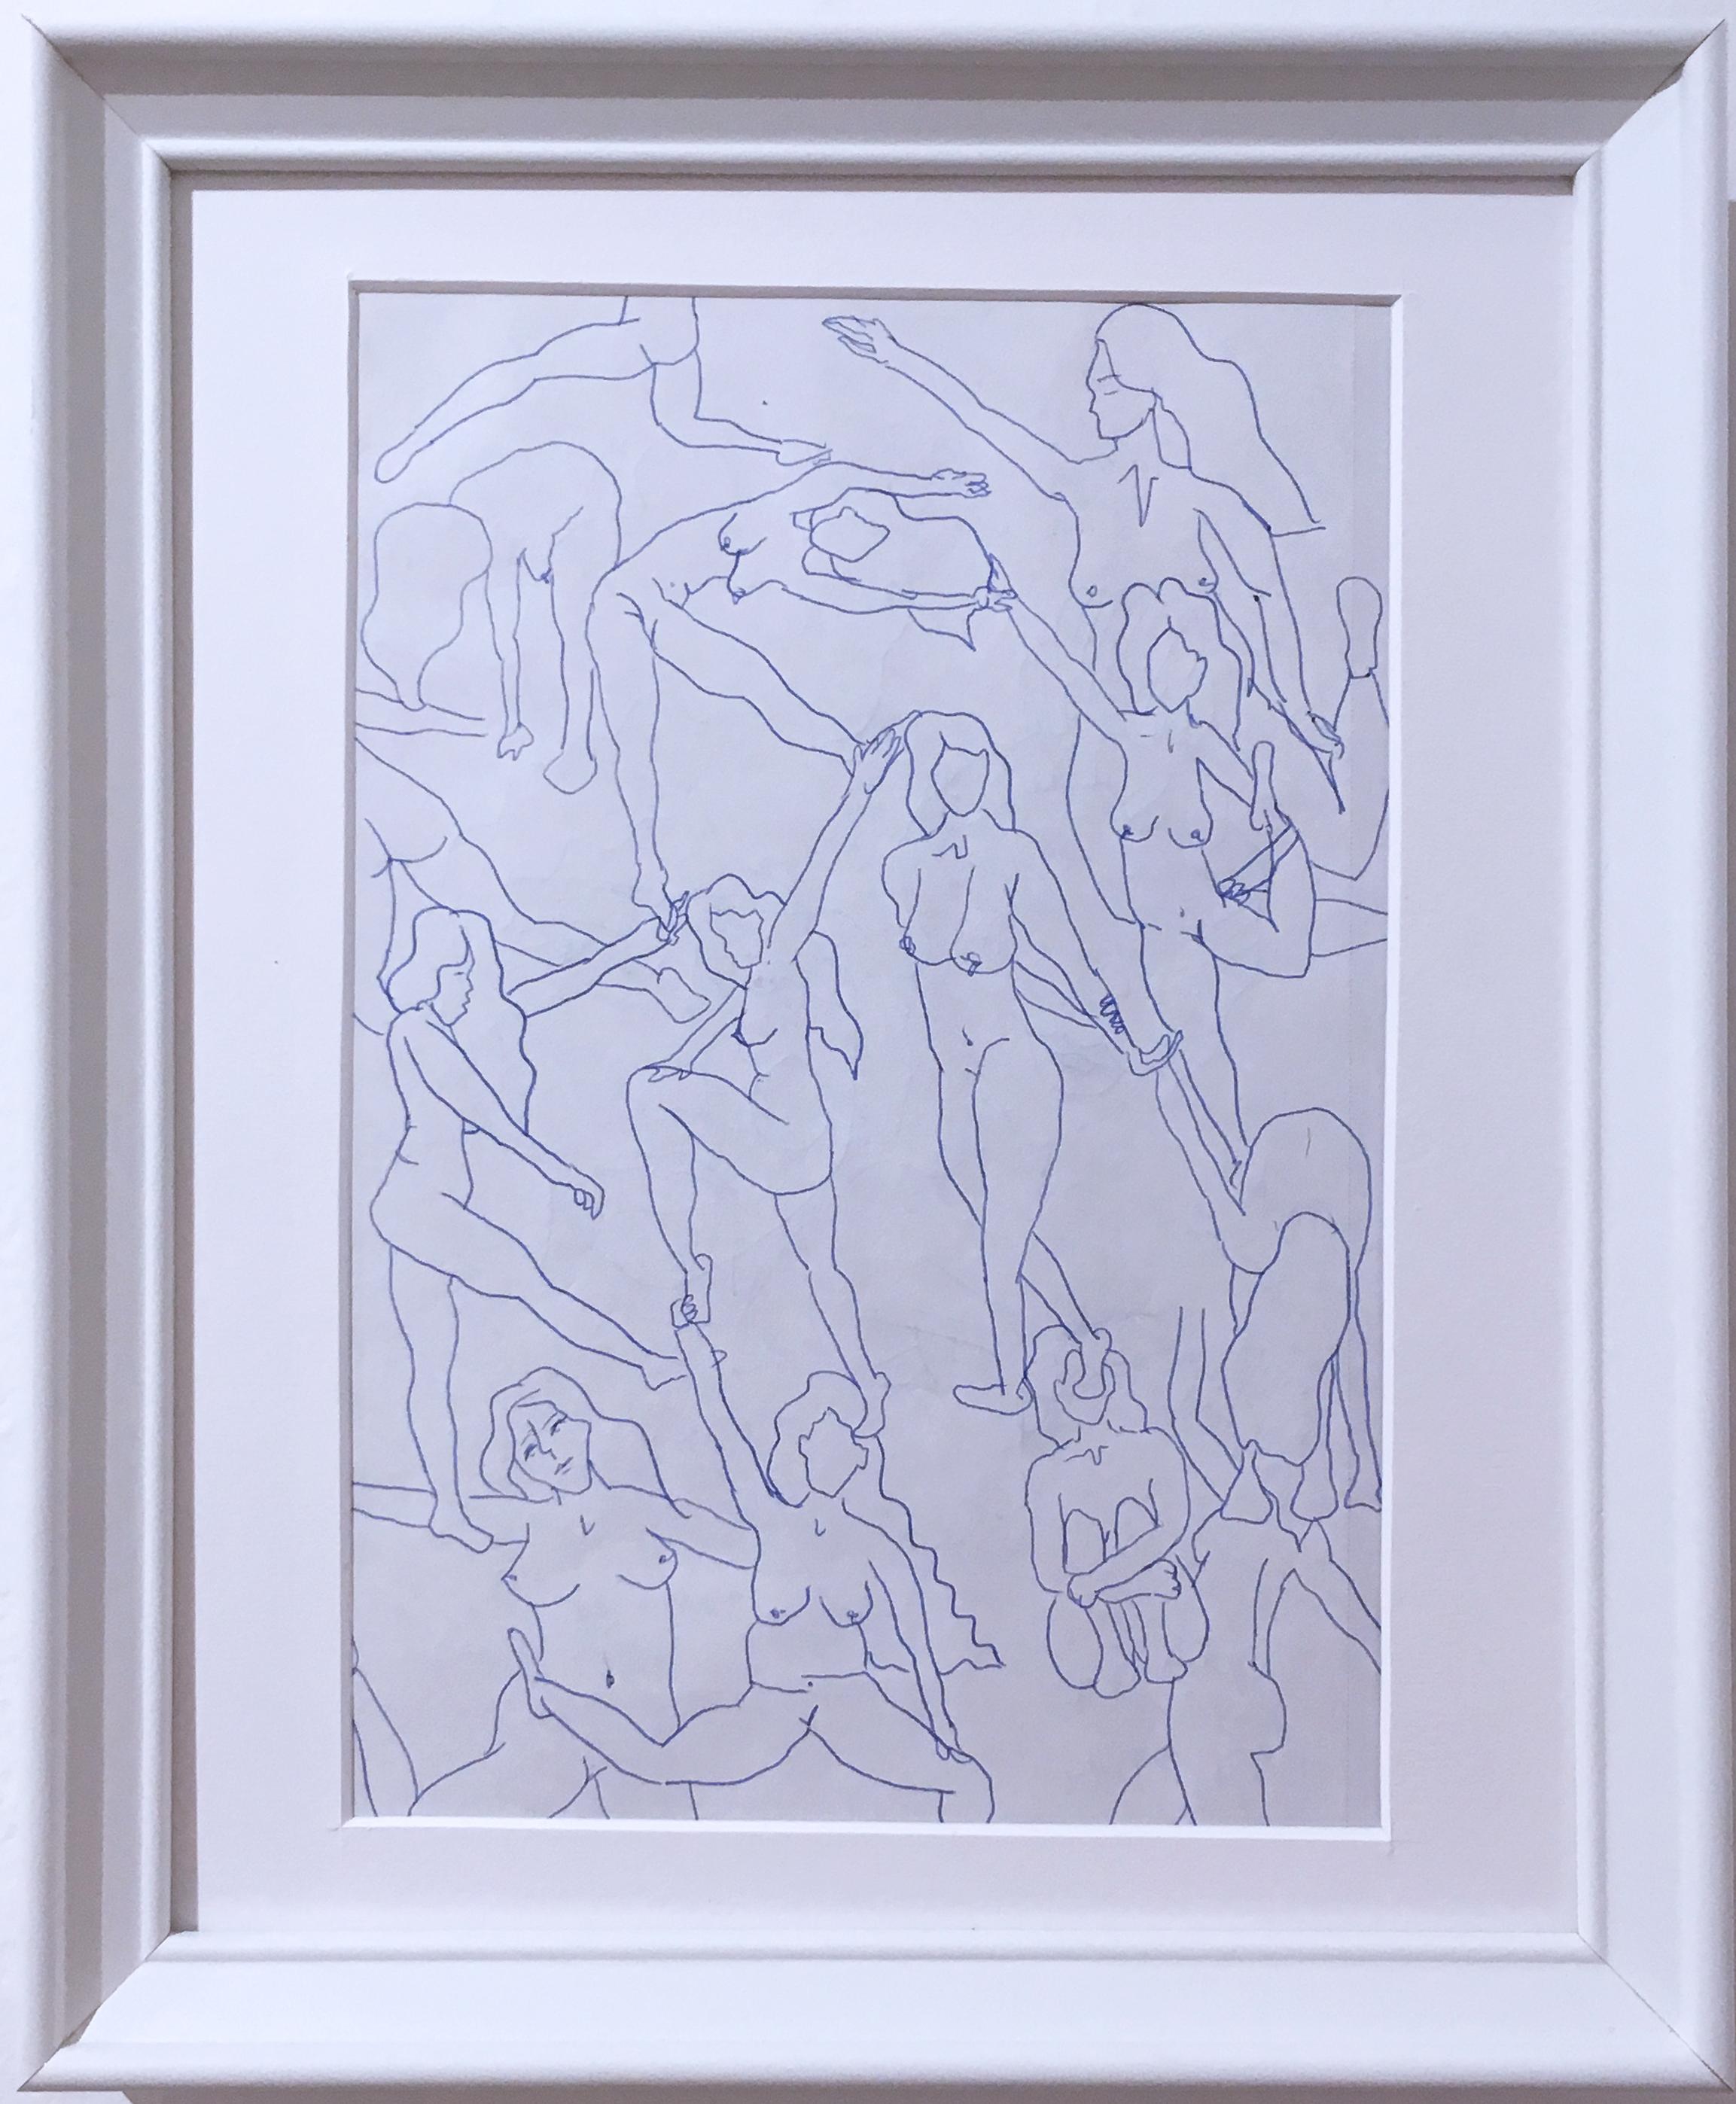 Nus bleus I, dessin à l'encre sur papier bleu et blanc, étude figurative représentant des femmes en position de pose